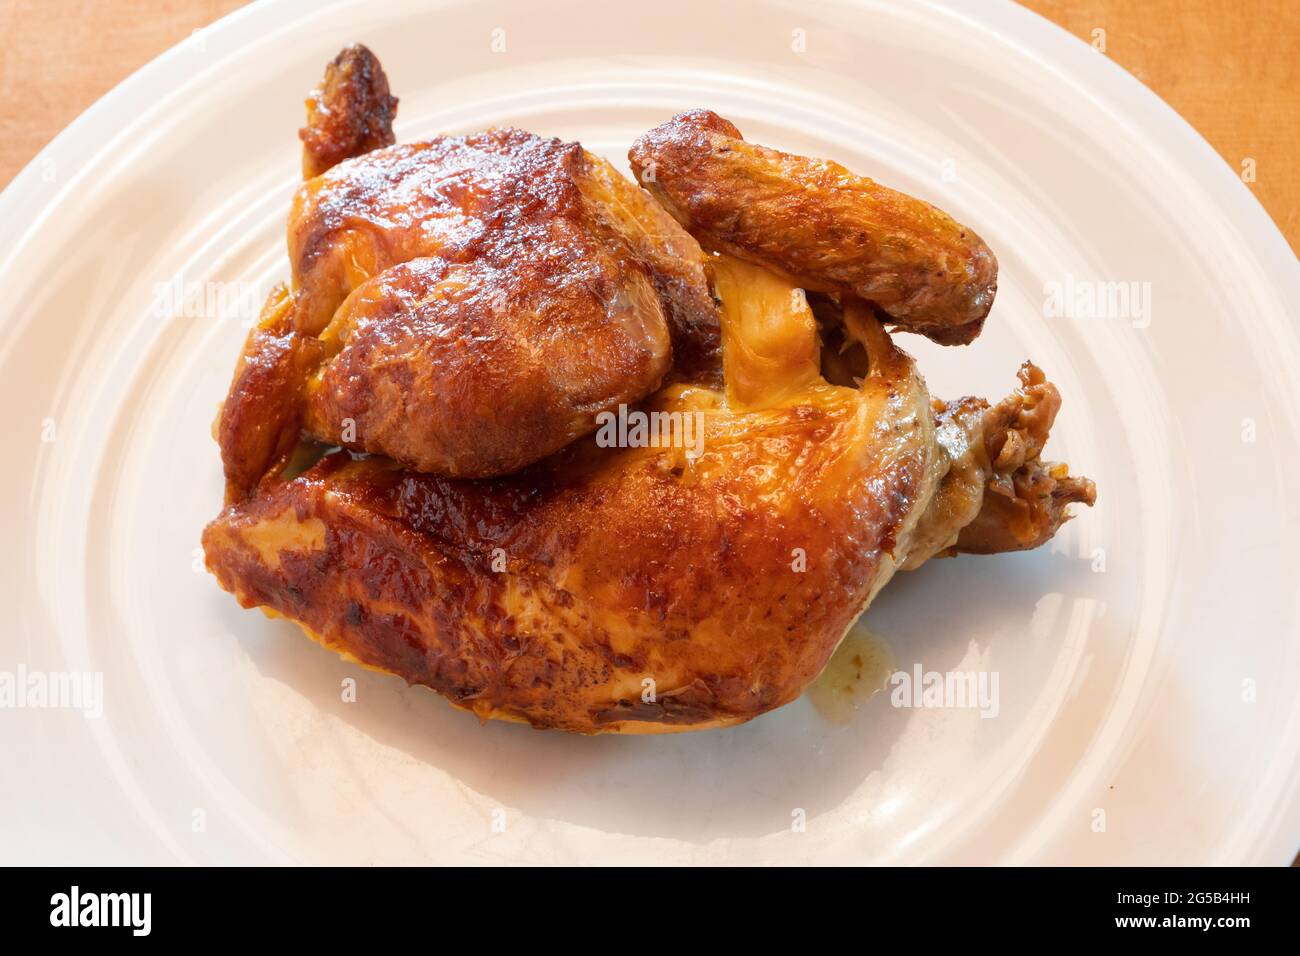 Rôti de demi-poulet sur une assiette blanche, rôti de poulet à la peau brune croustillante Banque D'Images